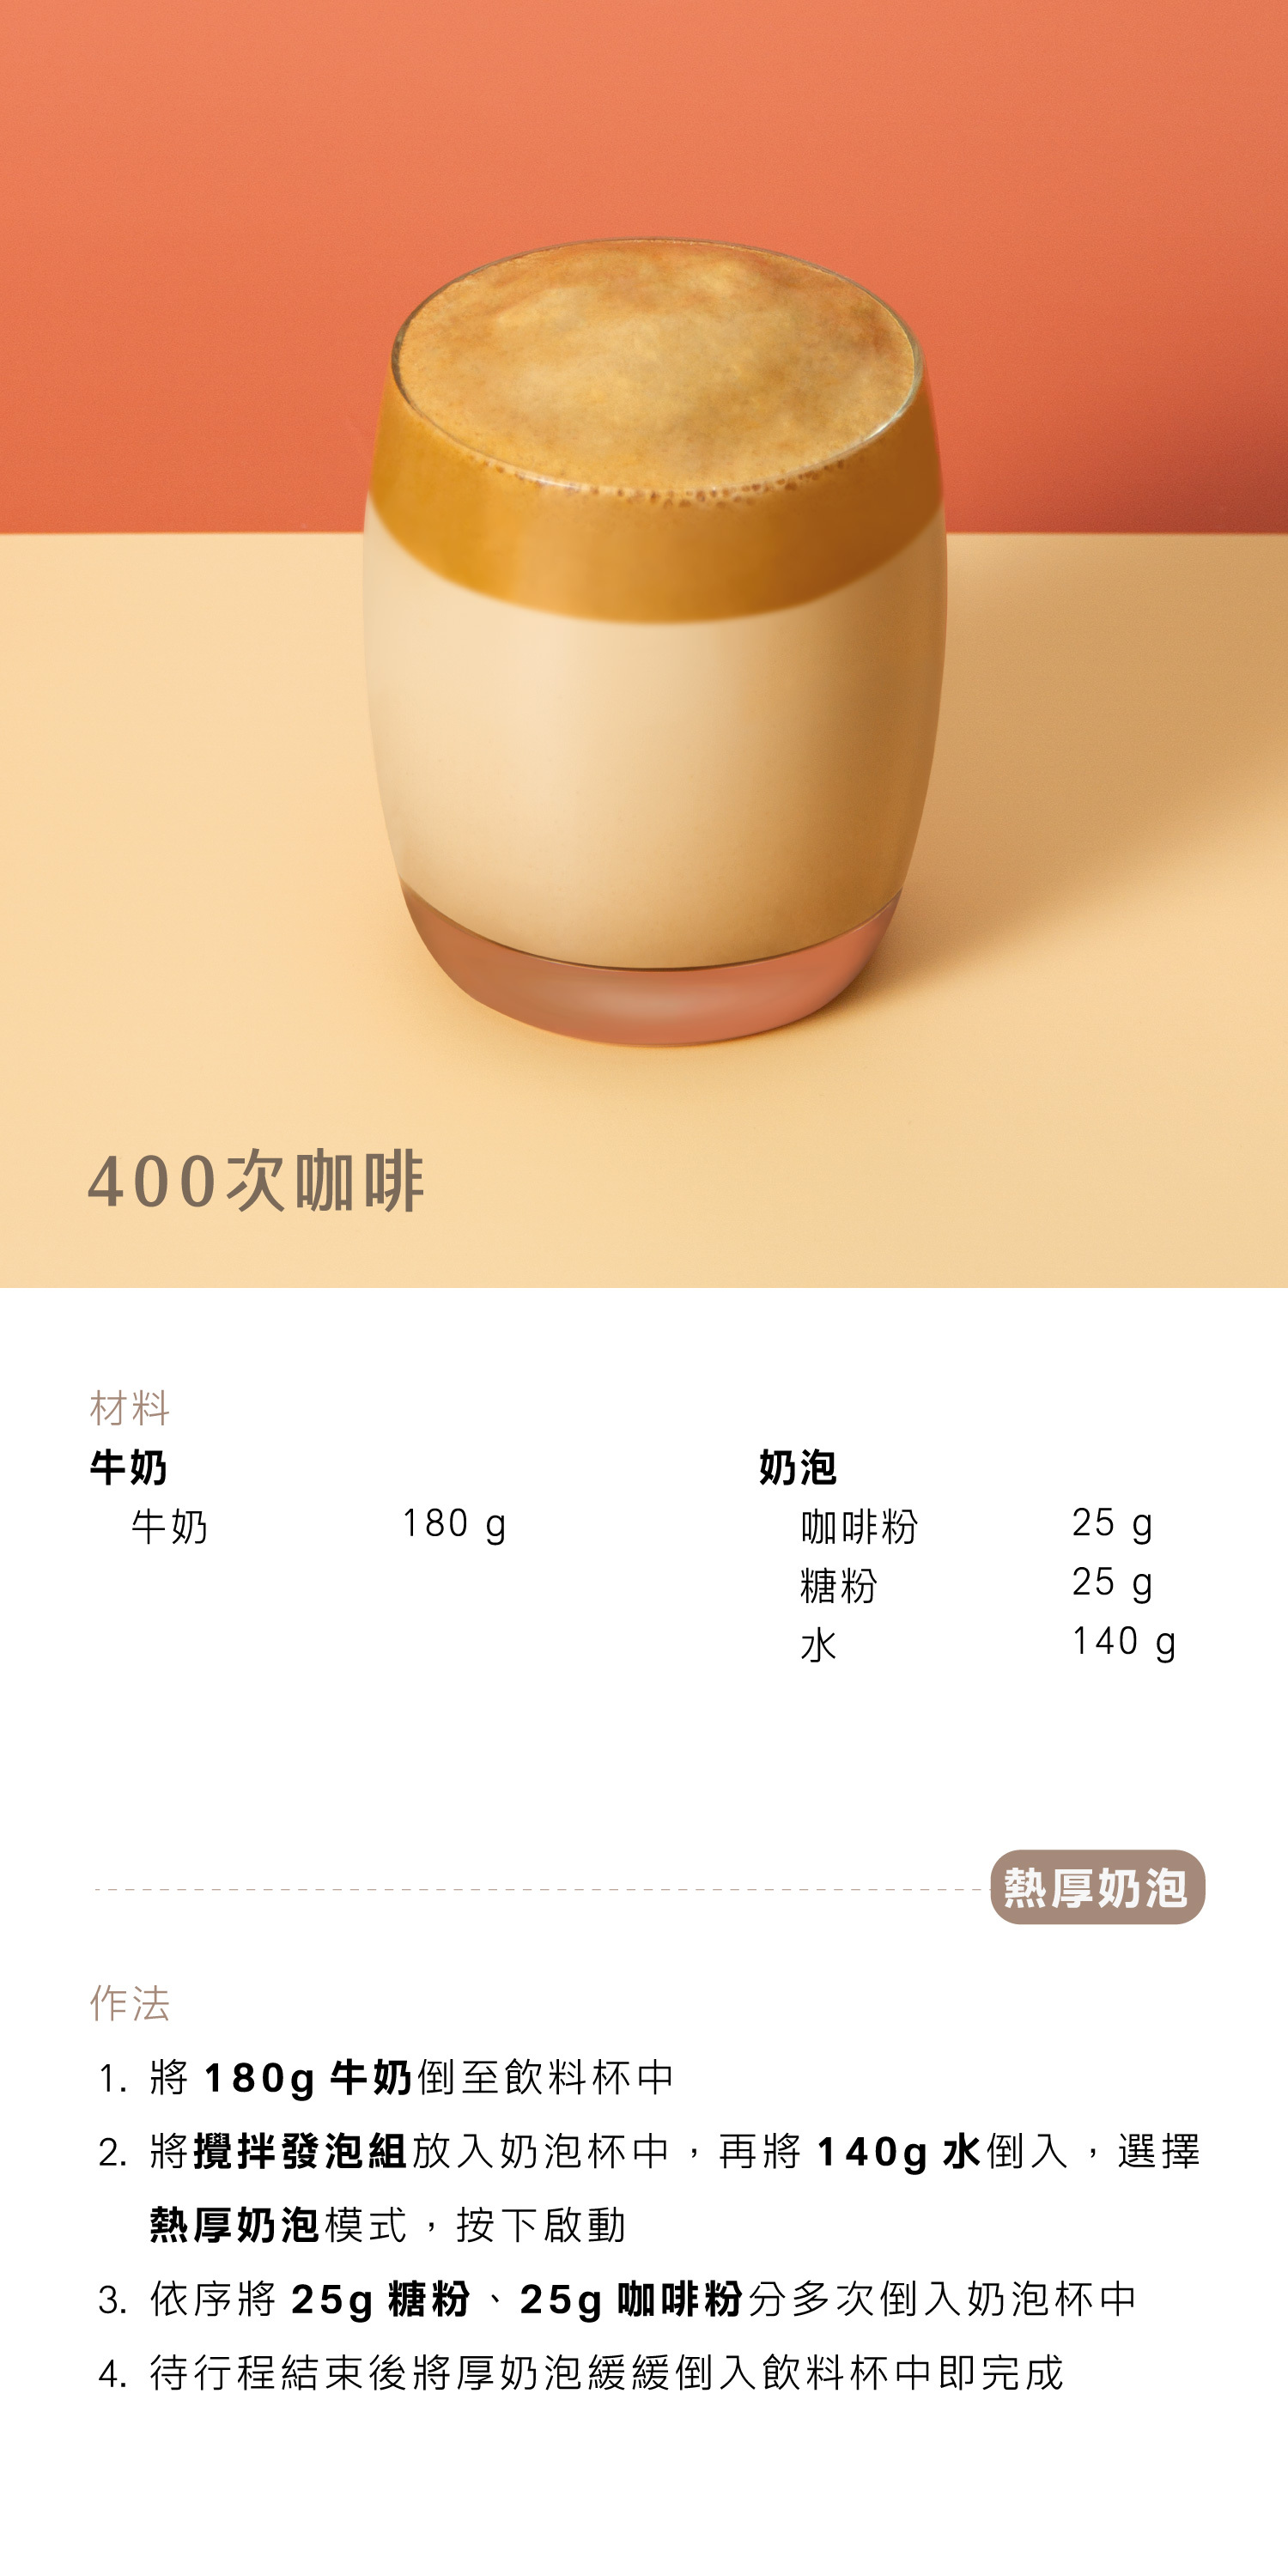 400次咖啡 - AIWA 奶泡攪拌機 AMF-500 Recipe 食譜 飲料教學